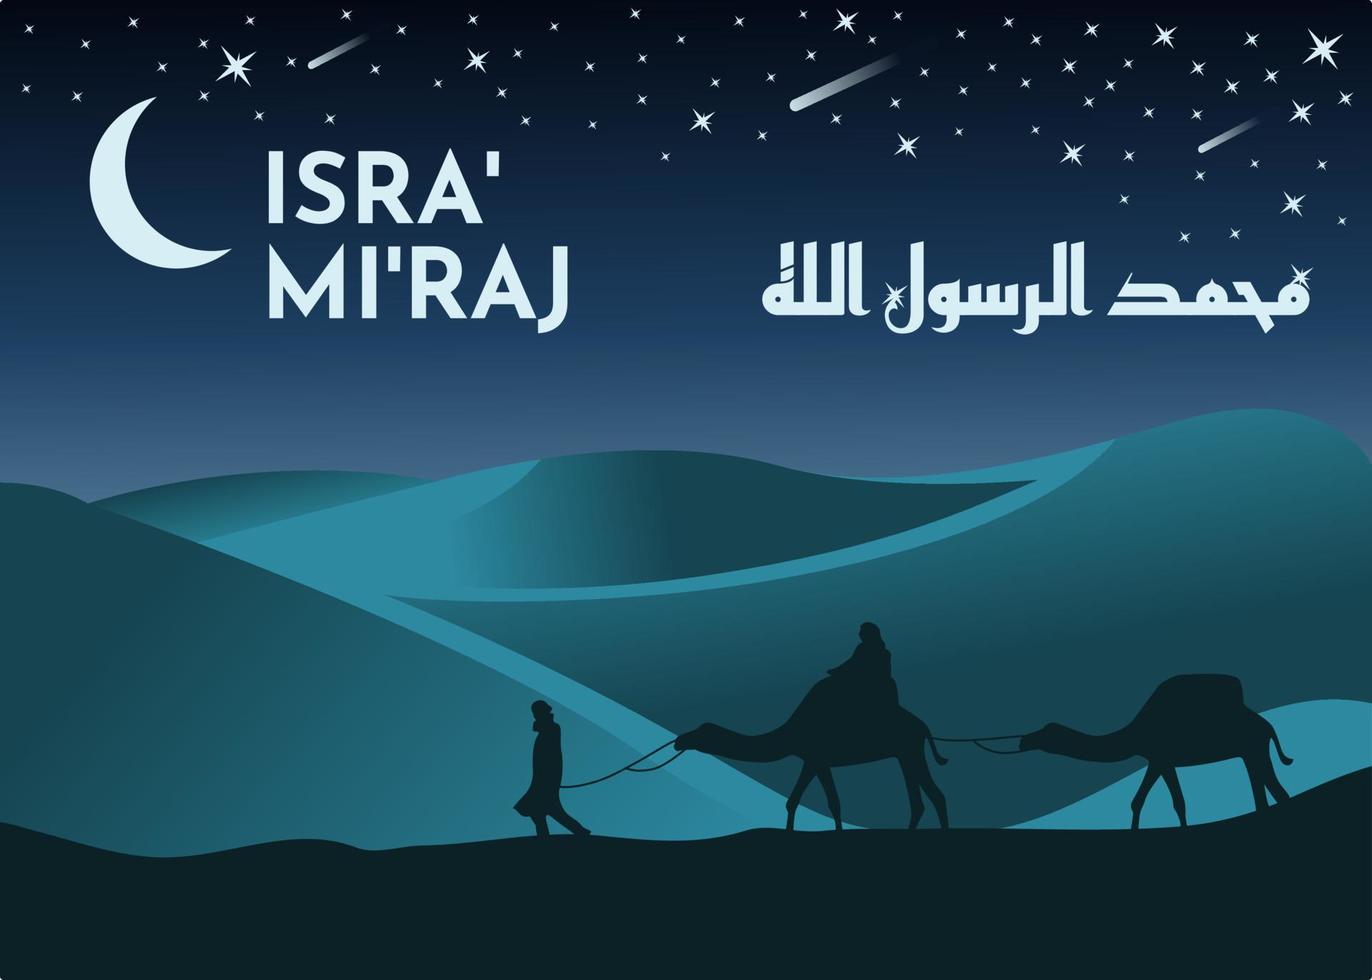 al-isra wal mi'raj profeten Muhammeds nattresa. designa en islamisk bakgrund med silhuettillustrationer av turister med sina kameler i öknen och månstjärnor som lyser på himlen. vektor